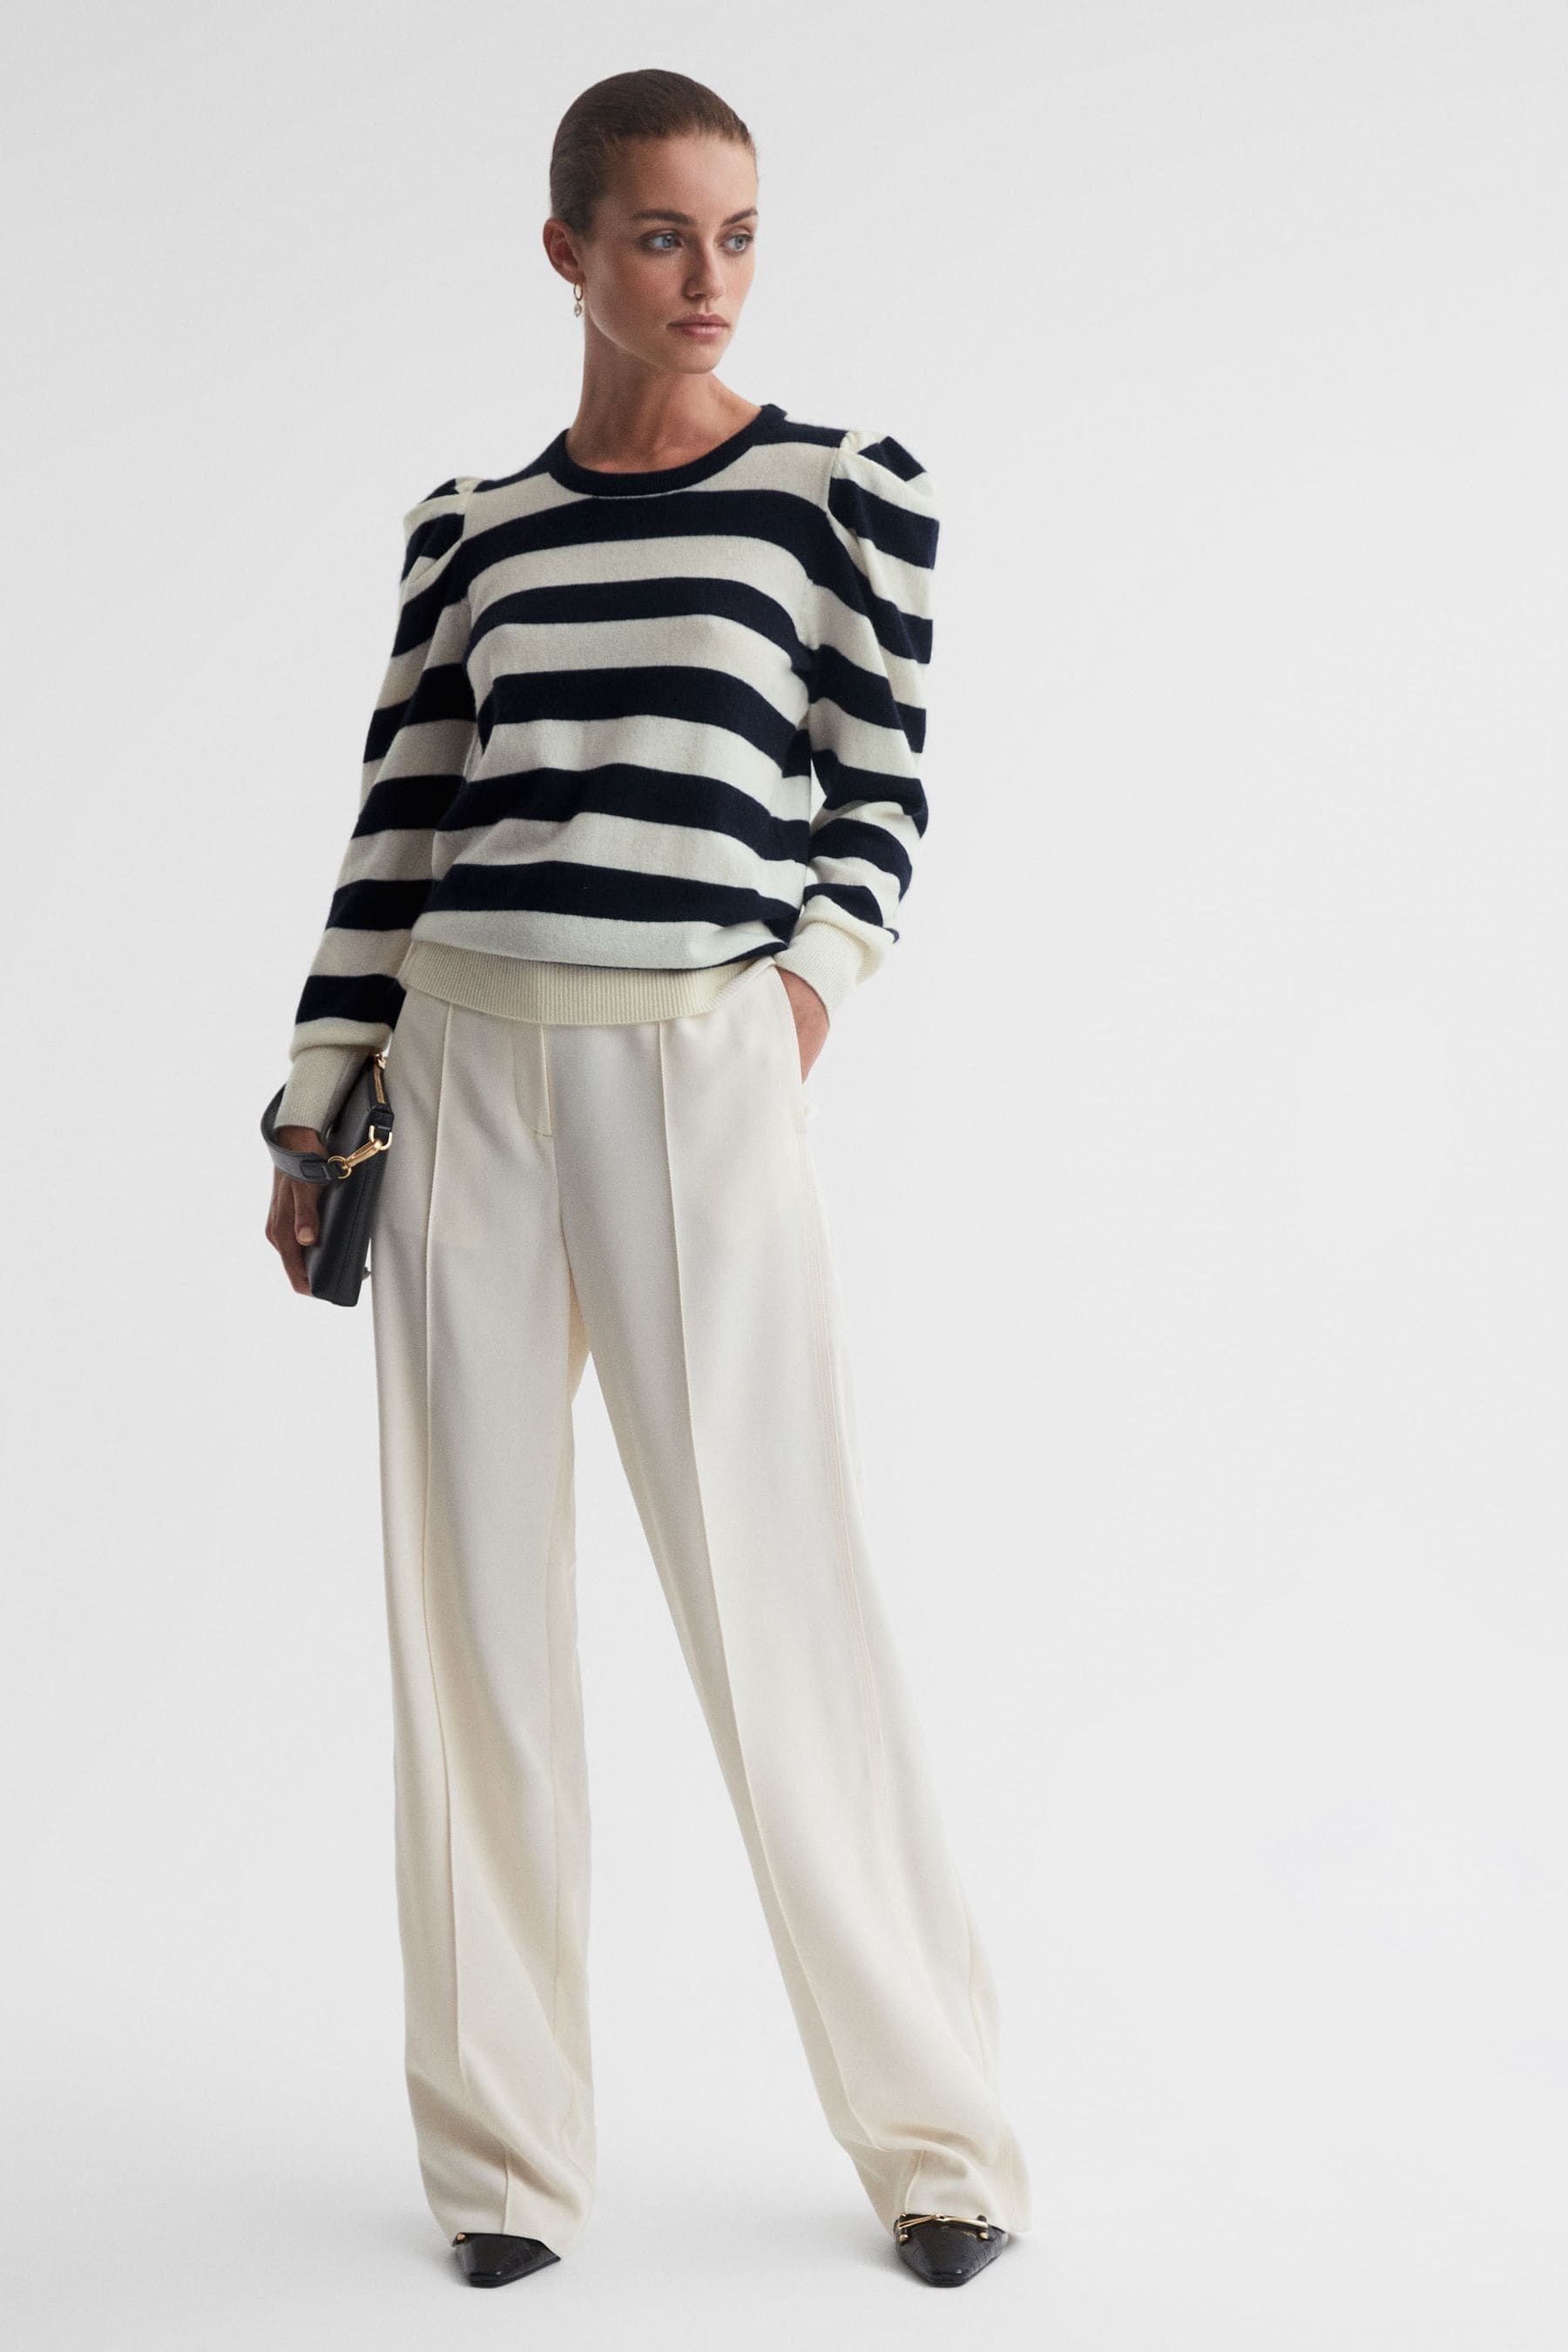 Reiss Fleming - Madeleine Thompson Navy/cream Madeleine Thompson Wool-cashmere Striped Top, L